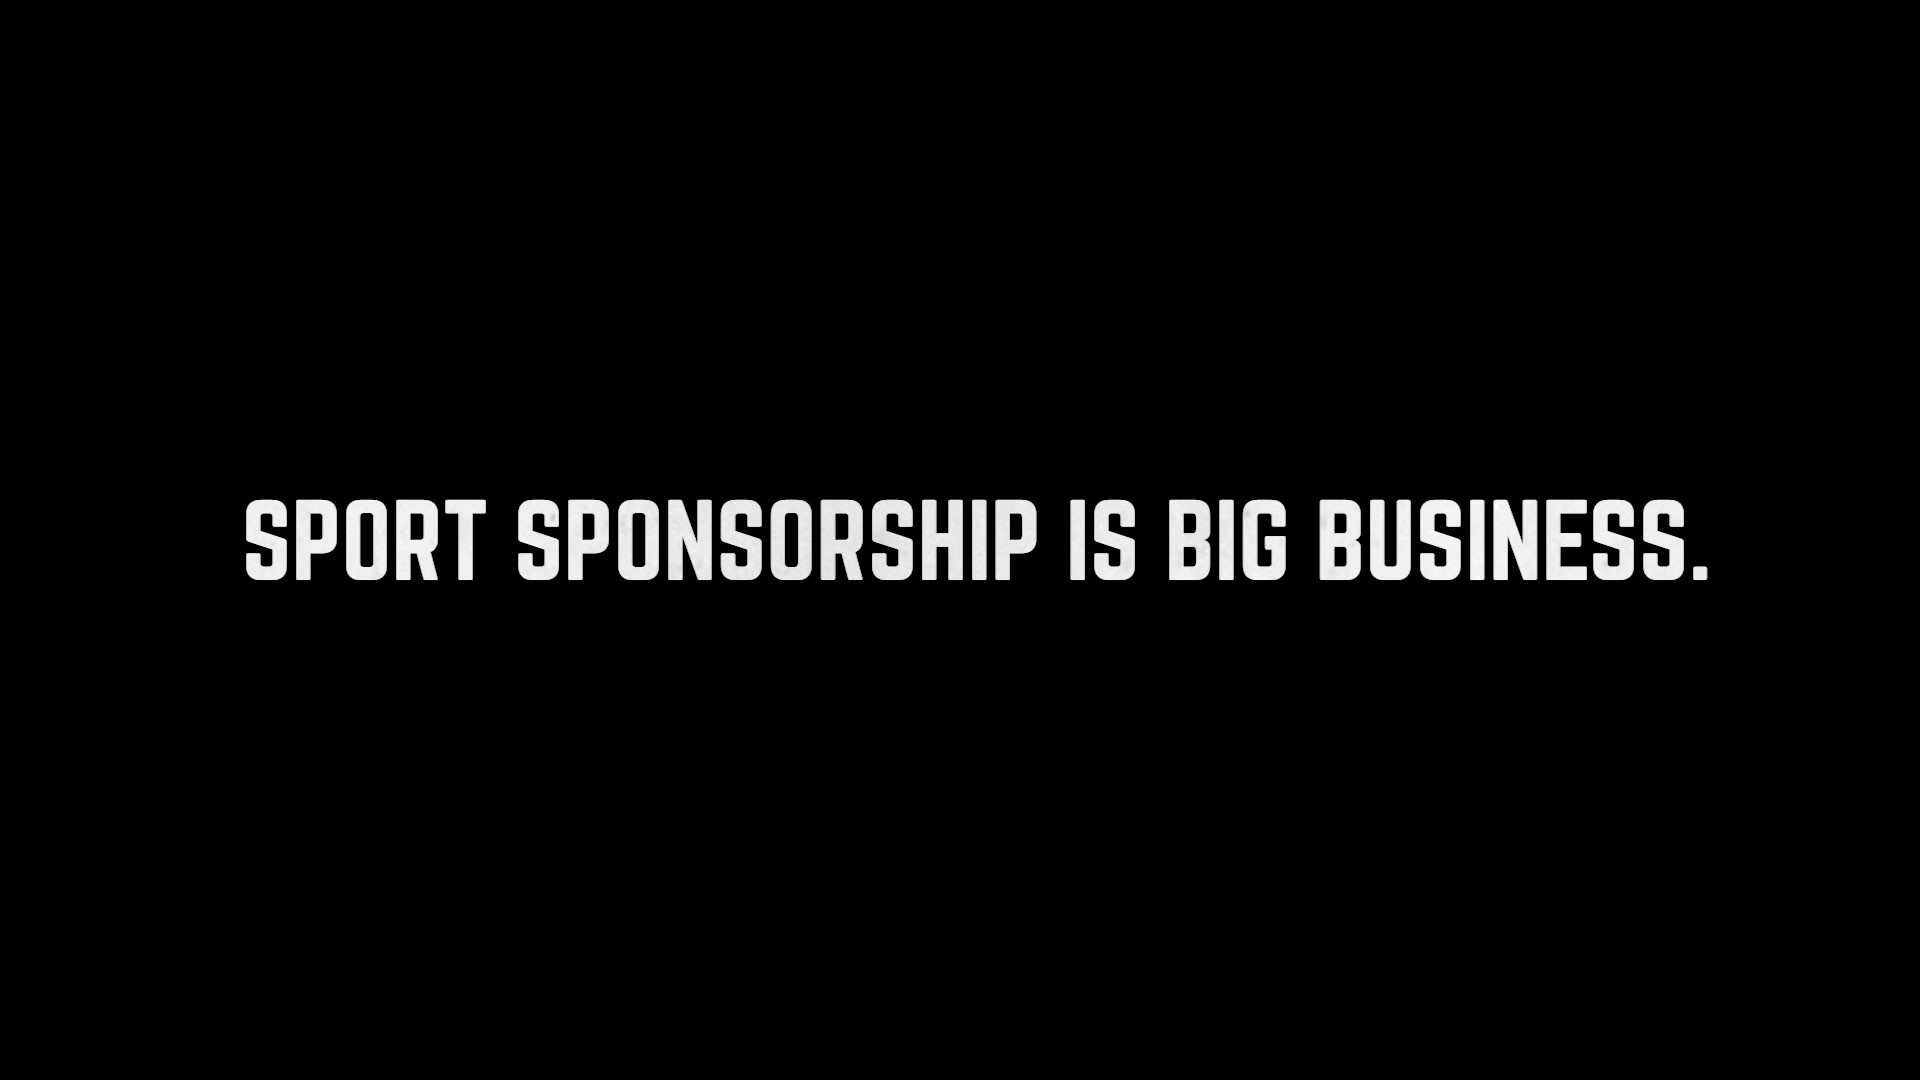 Dare to sponsor